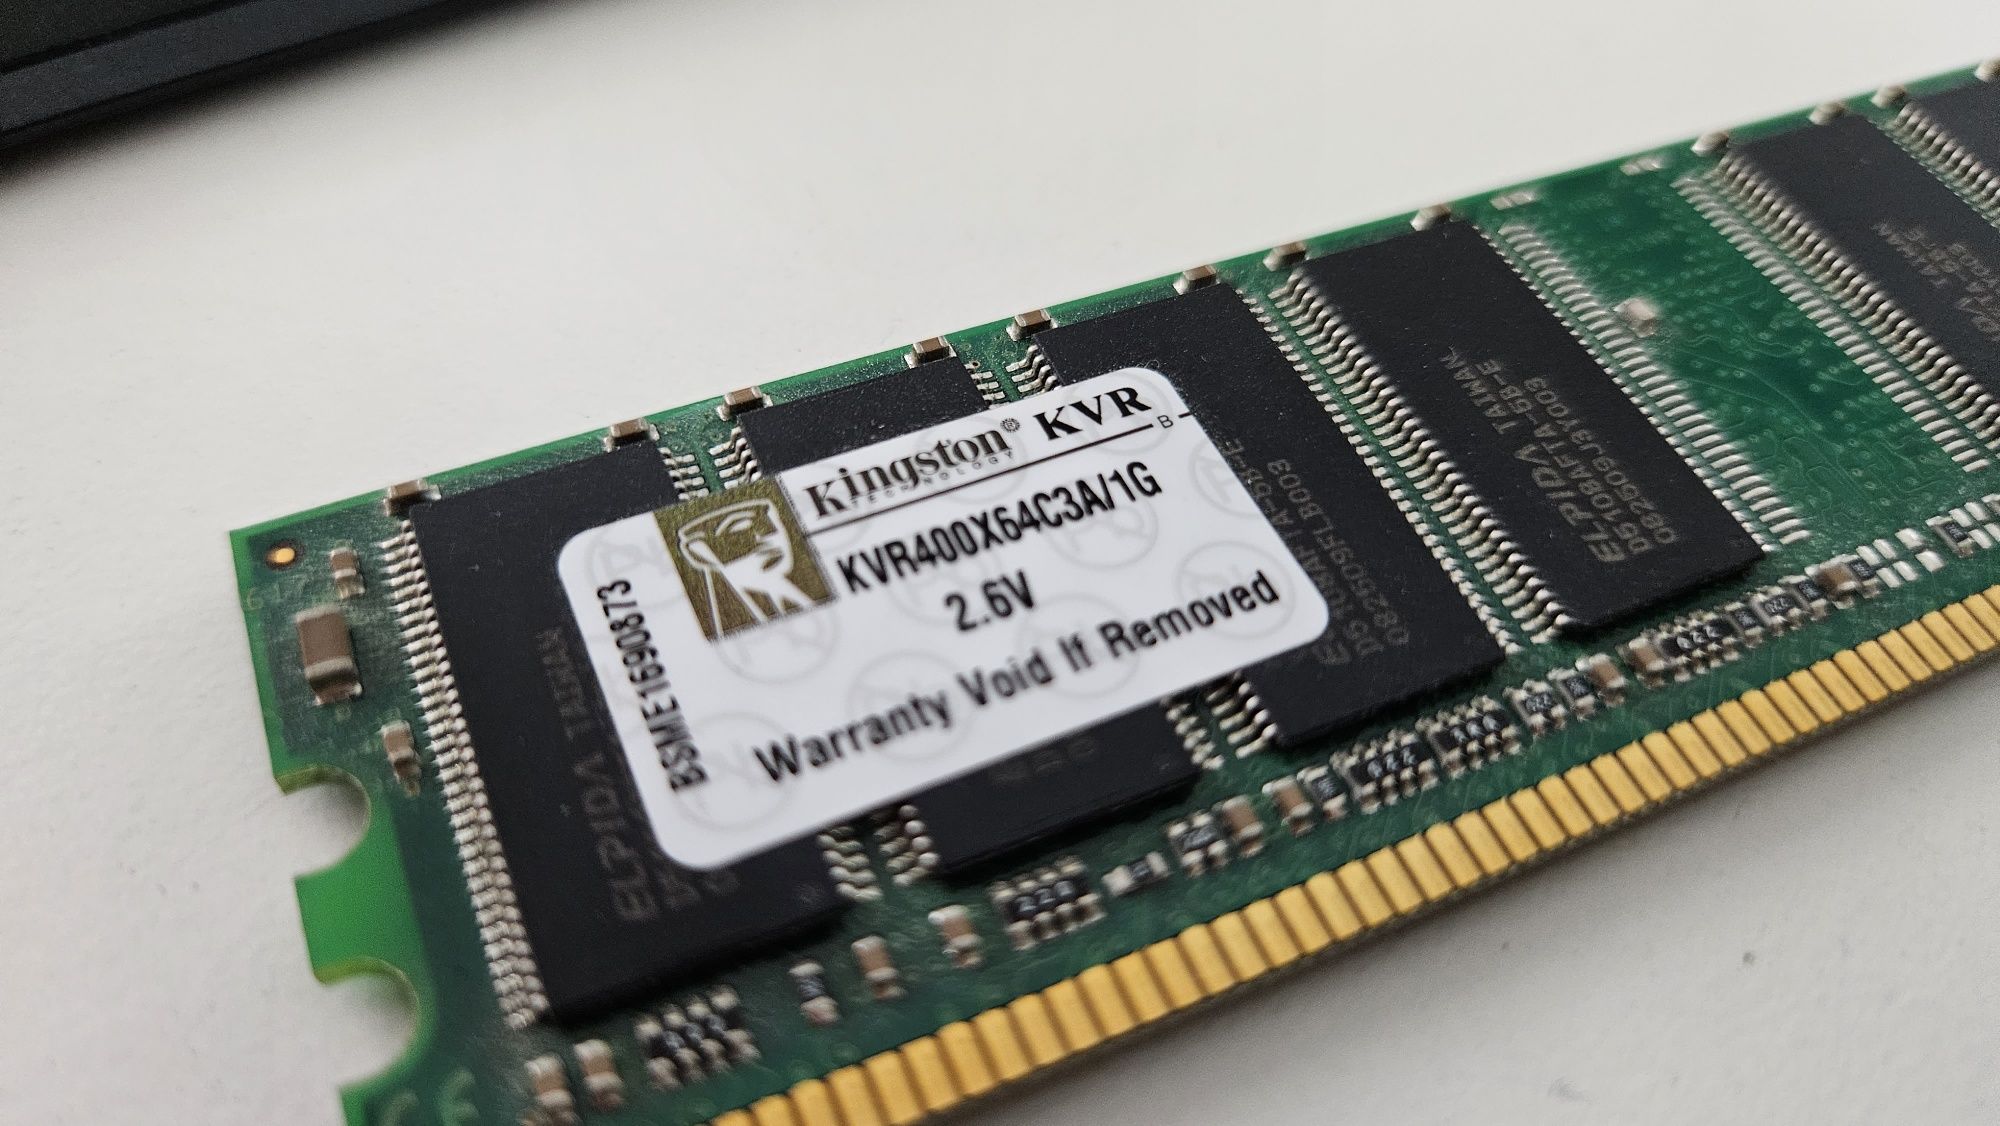 Pamięć RAM Kingston 1GB DDR1 400MHz -KTH-D530/1G Sprawna 100%

Przedmi